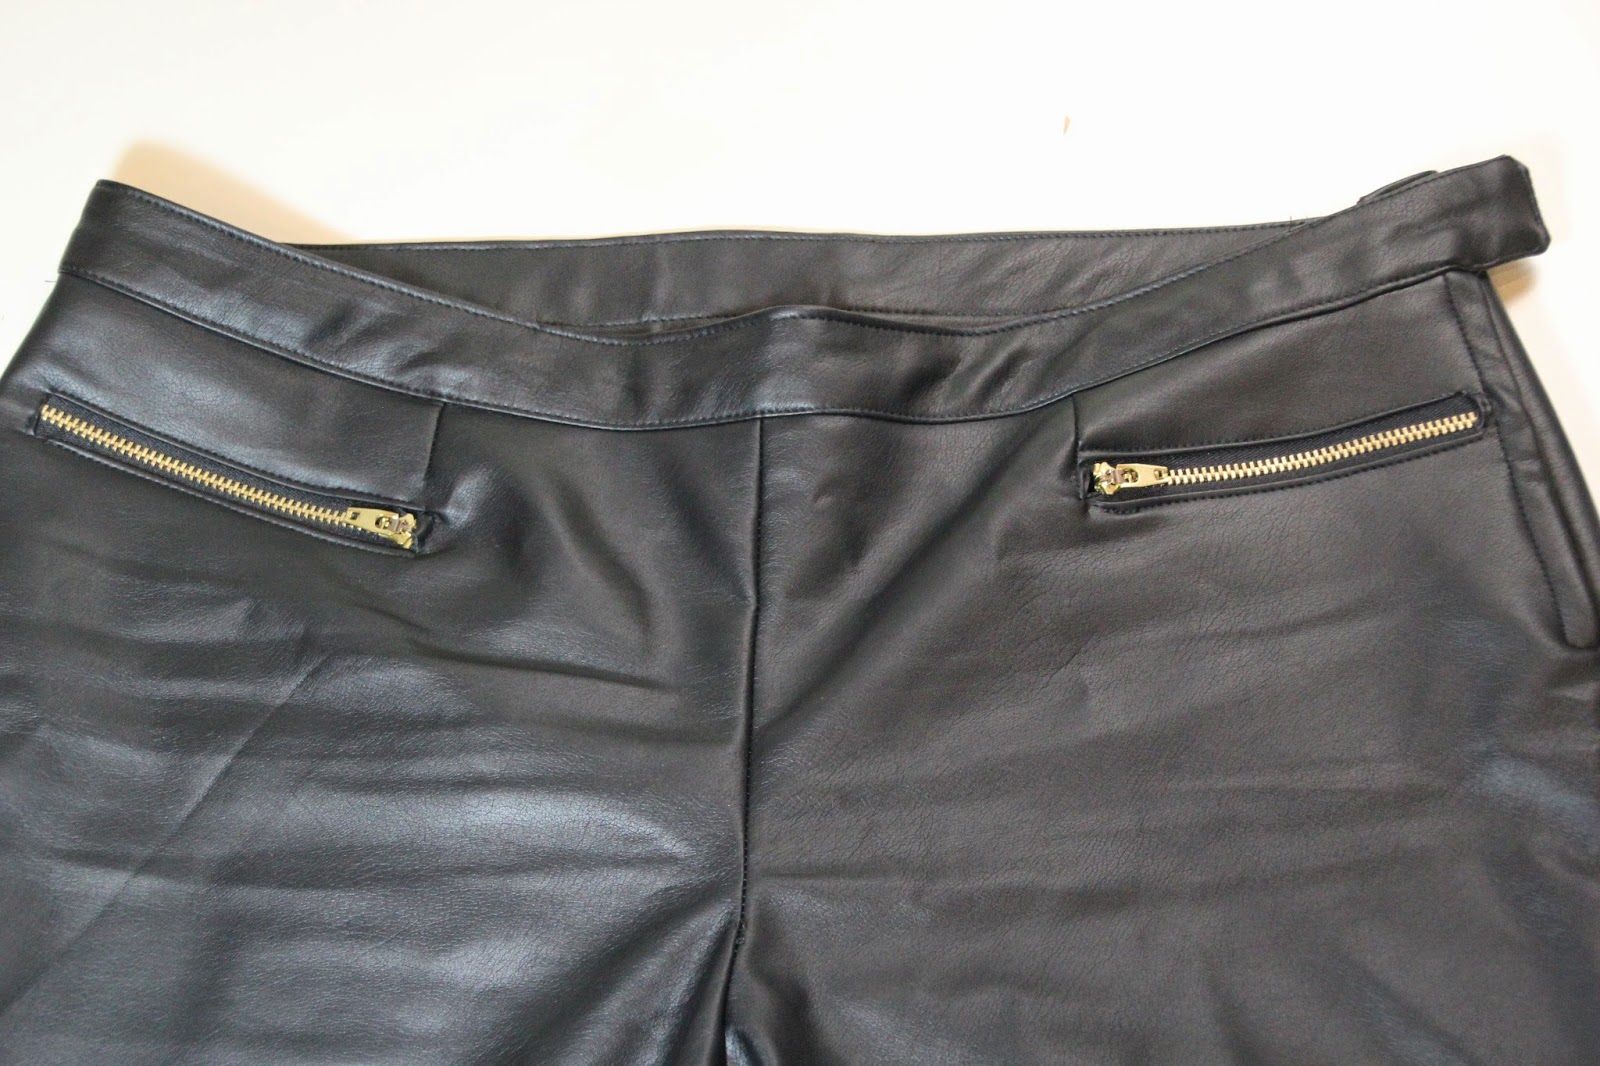 DIY Costura: Cómo hacer pantalones de cuero (patrones o moldes gratis). blog de costura y blog diy.